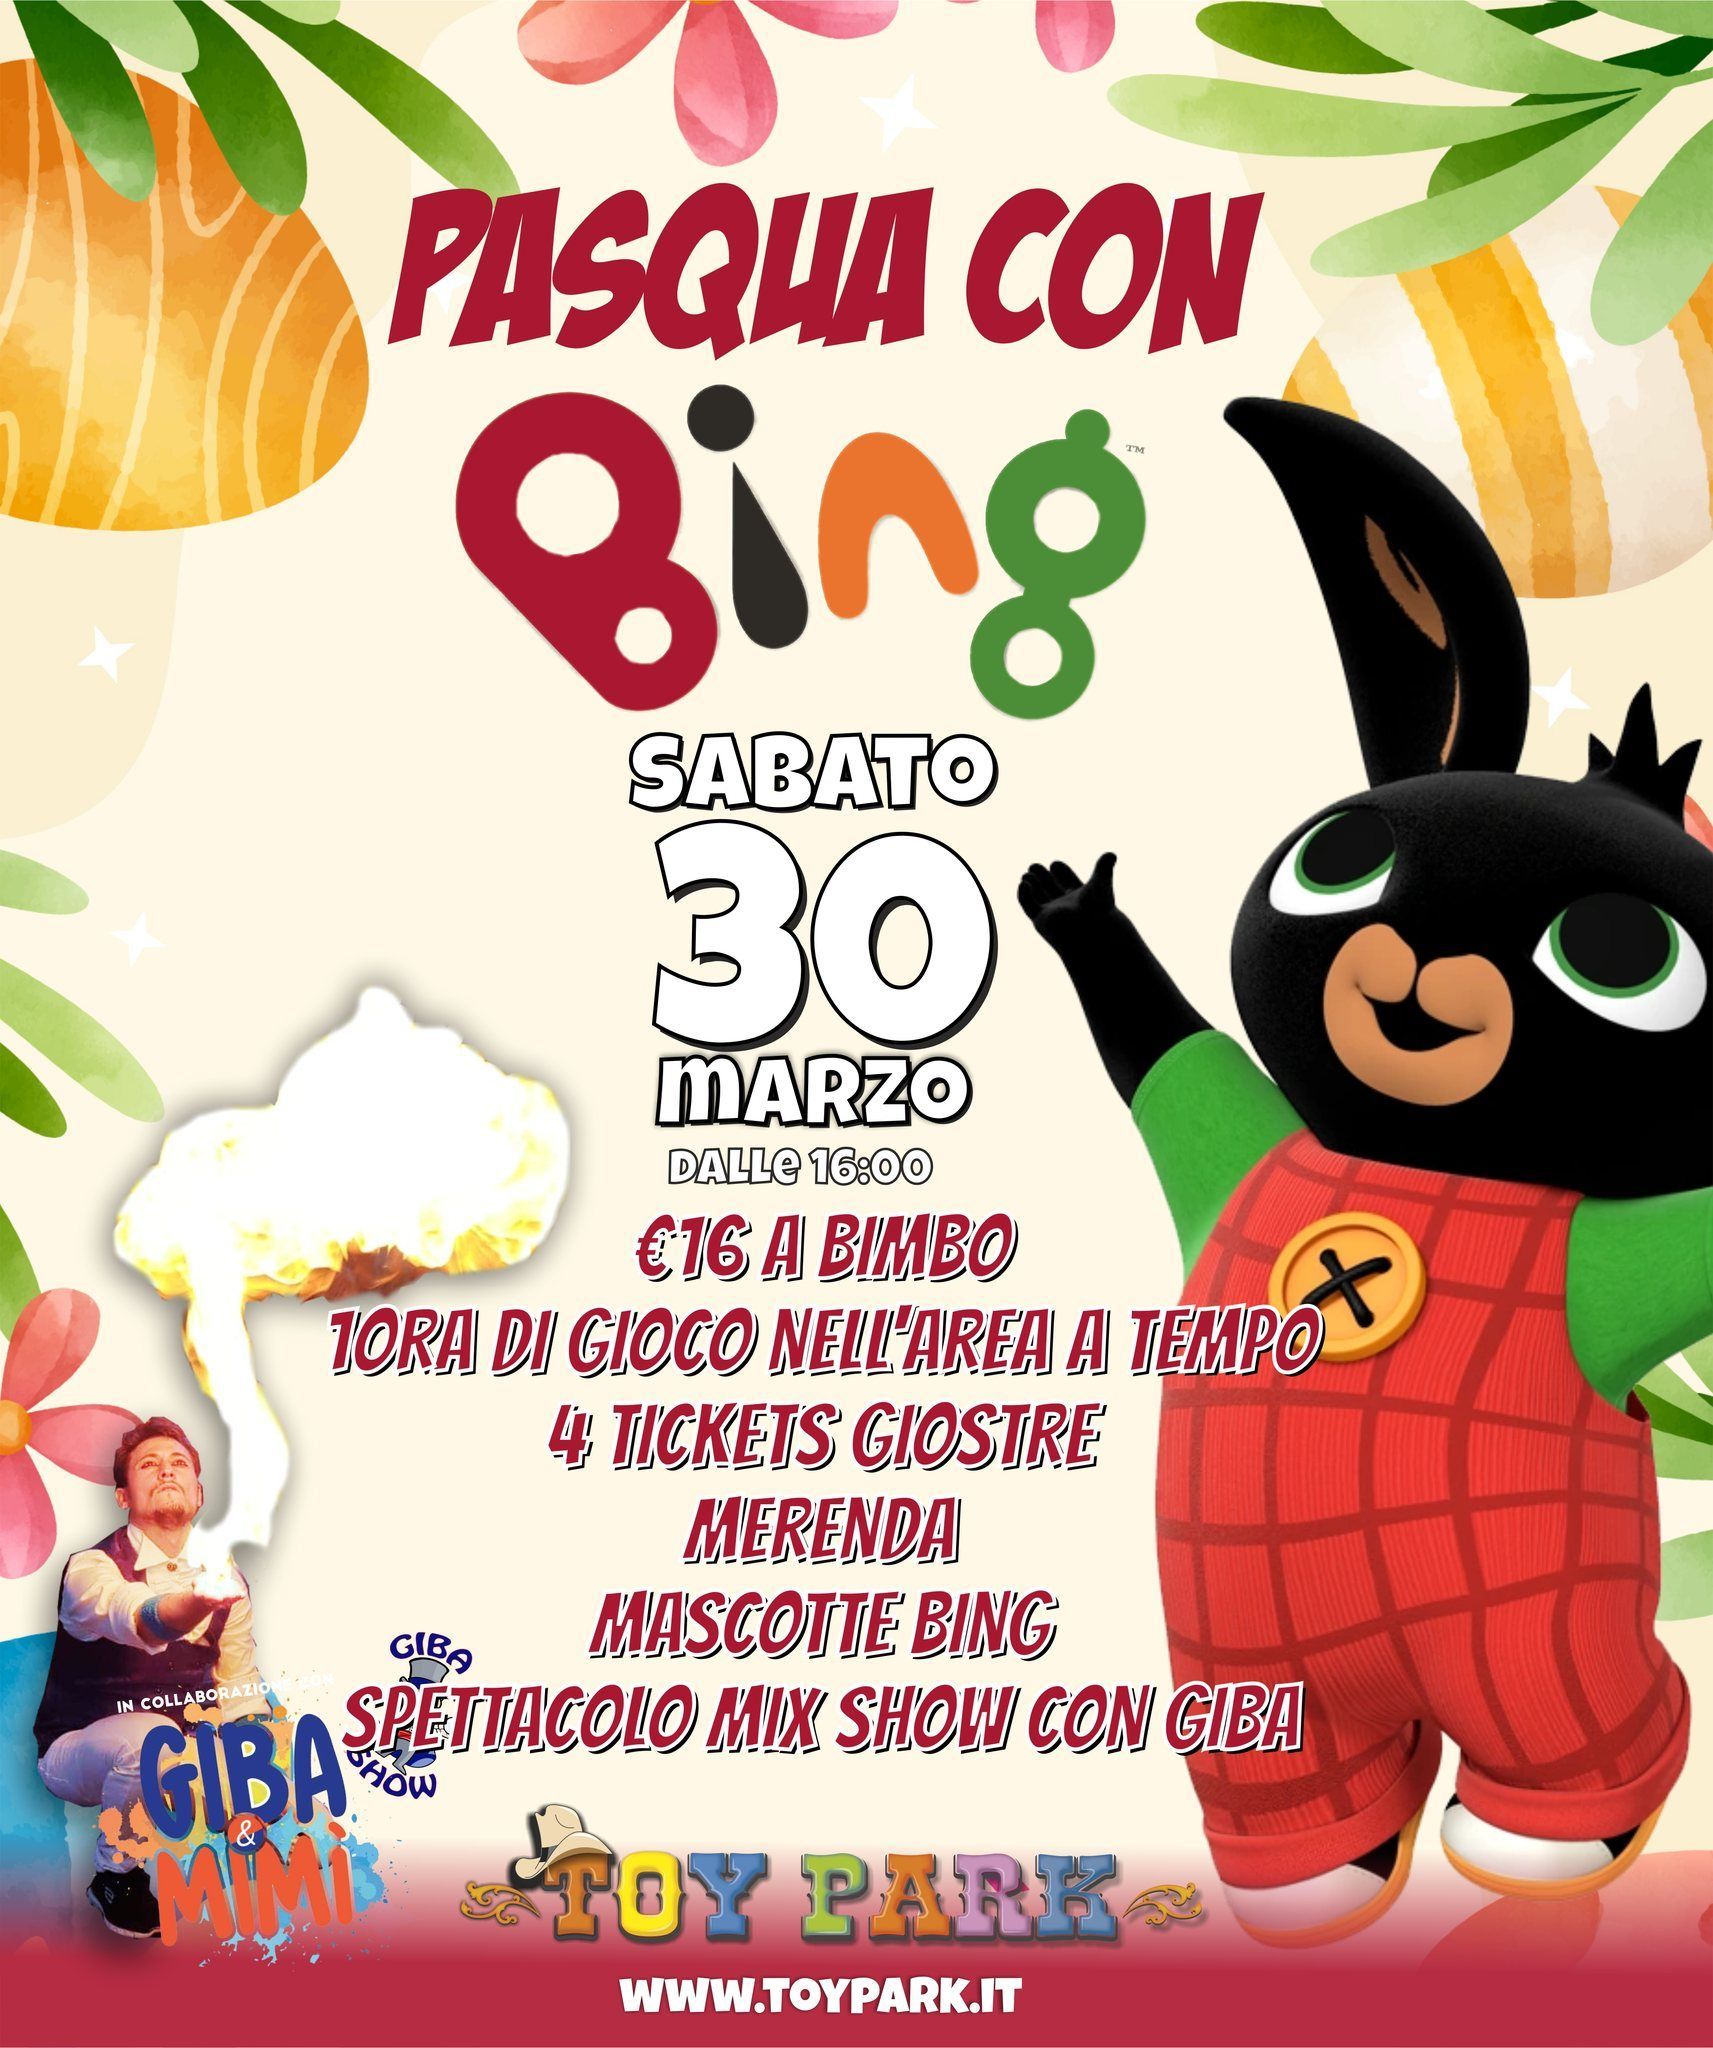 Pasqua con Bing, parco divertimenti Toy Park Palermo